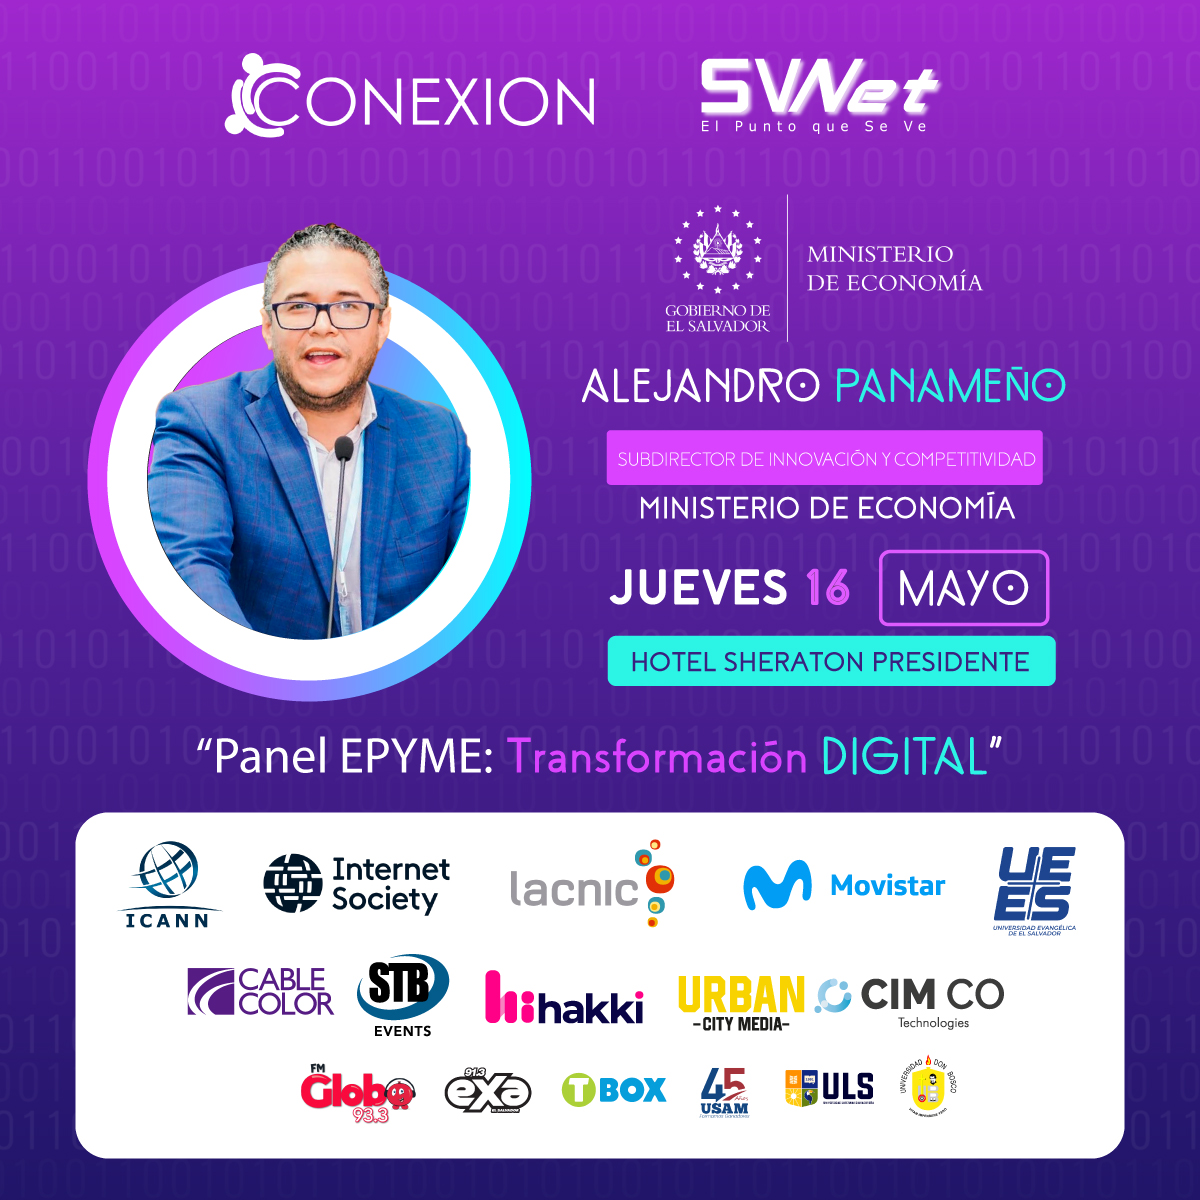 🌐 ¡Explora con nosotros la Transformación Digital en las PYMEs! Presentamos el panel liderado por Alejandro Panameño @ale_panameno, Subdirector de Innovación y Competitividad en @EconomiaSV.

➡️ Regístrate antes del 13 mayo aquí diadeinternet.sv

#DDI2024 #diadeinternet